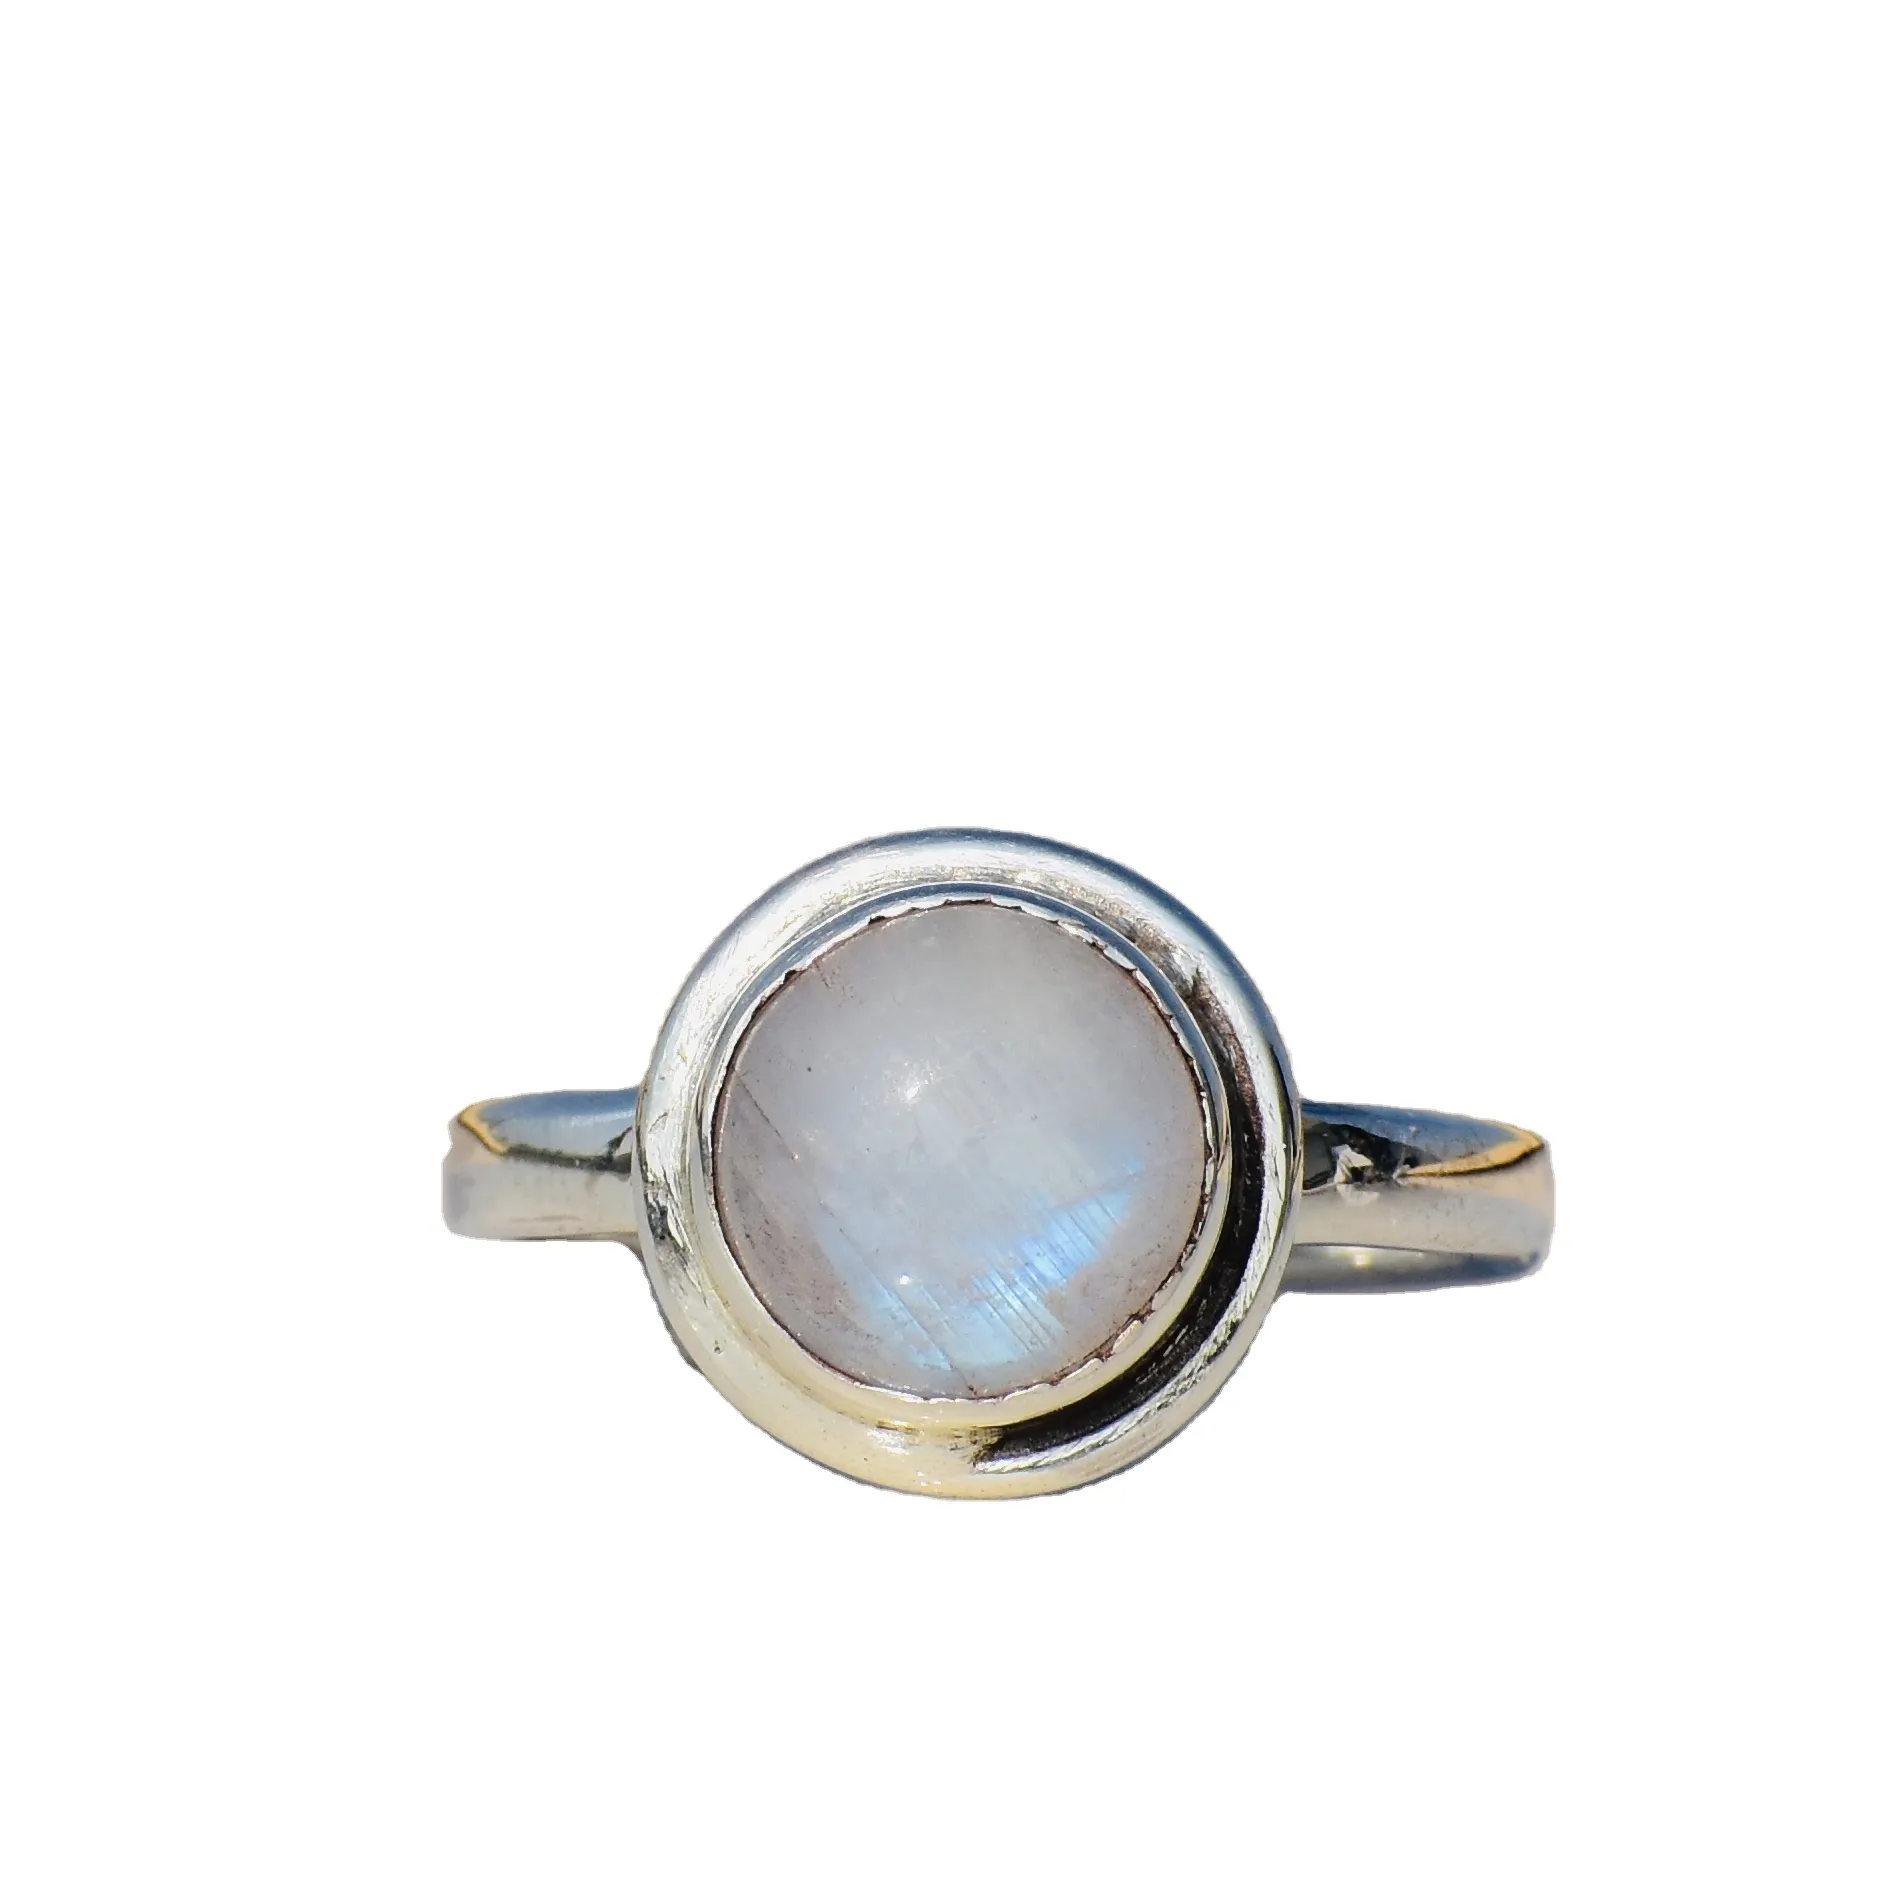 라운드 보석 무지개 월장석 반지 하이 퀄리티 스털링 실버 월장석 반지 도매 가격 간단한 흰색 월장석 반지